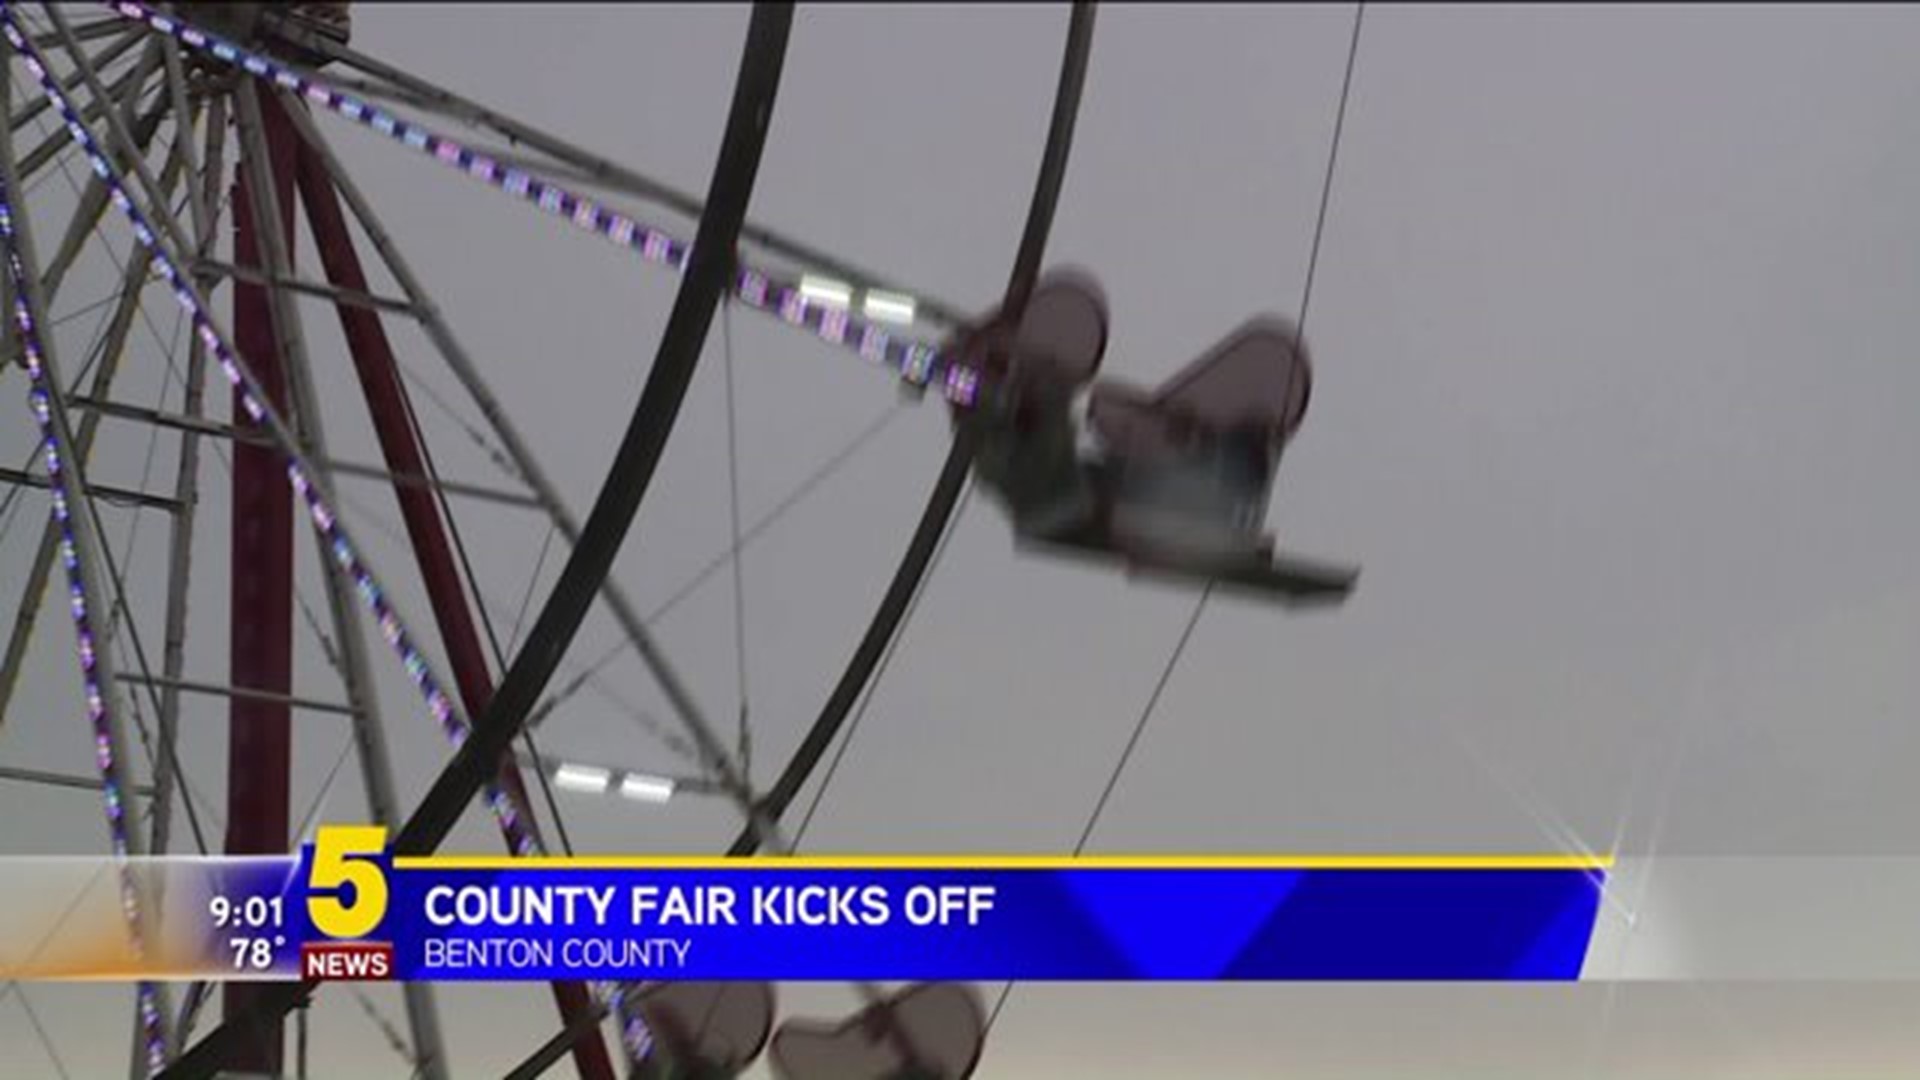 Benton County Fair